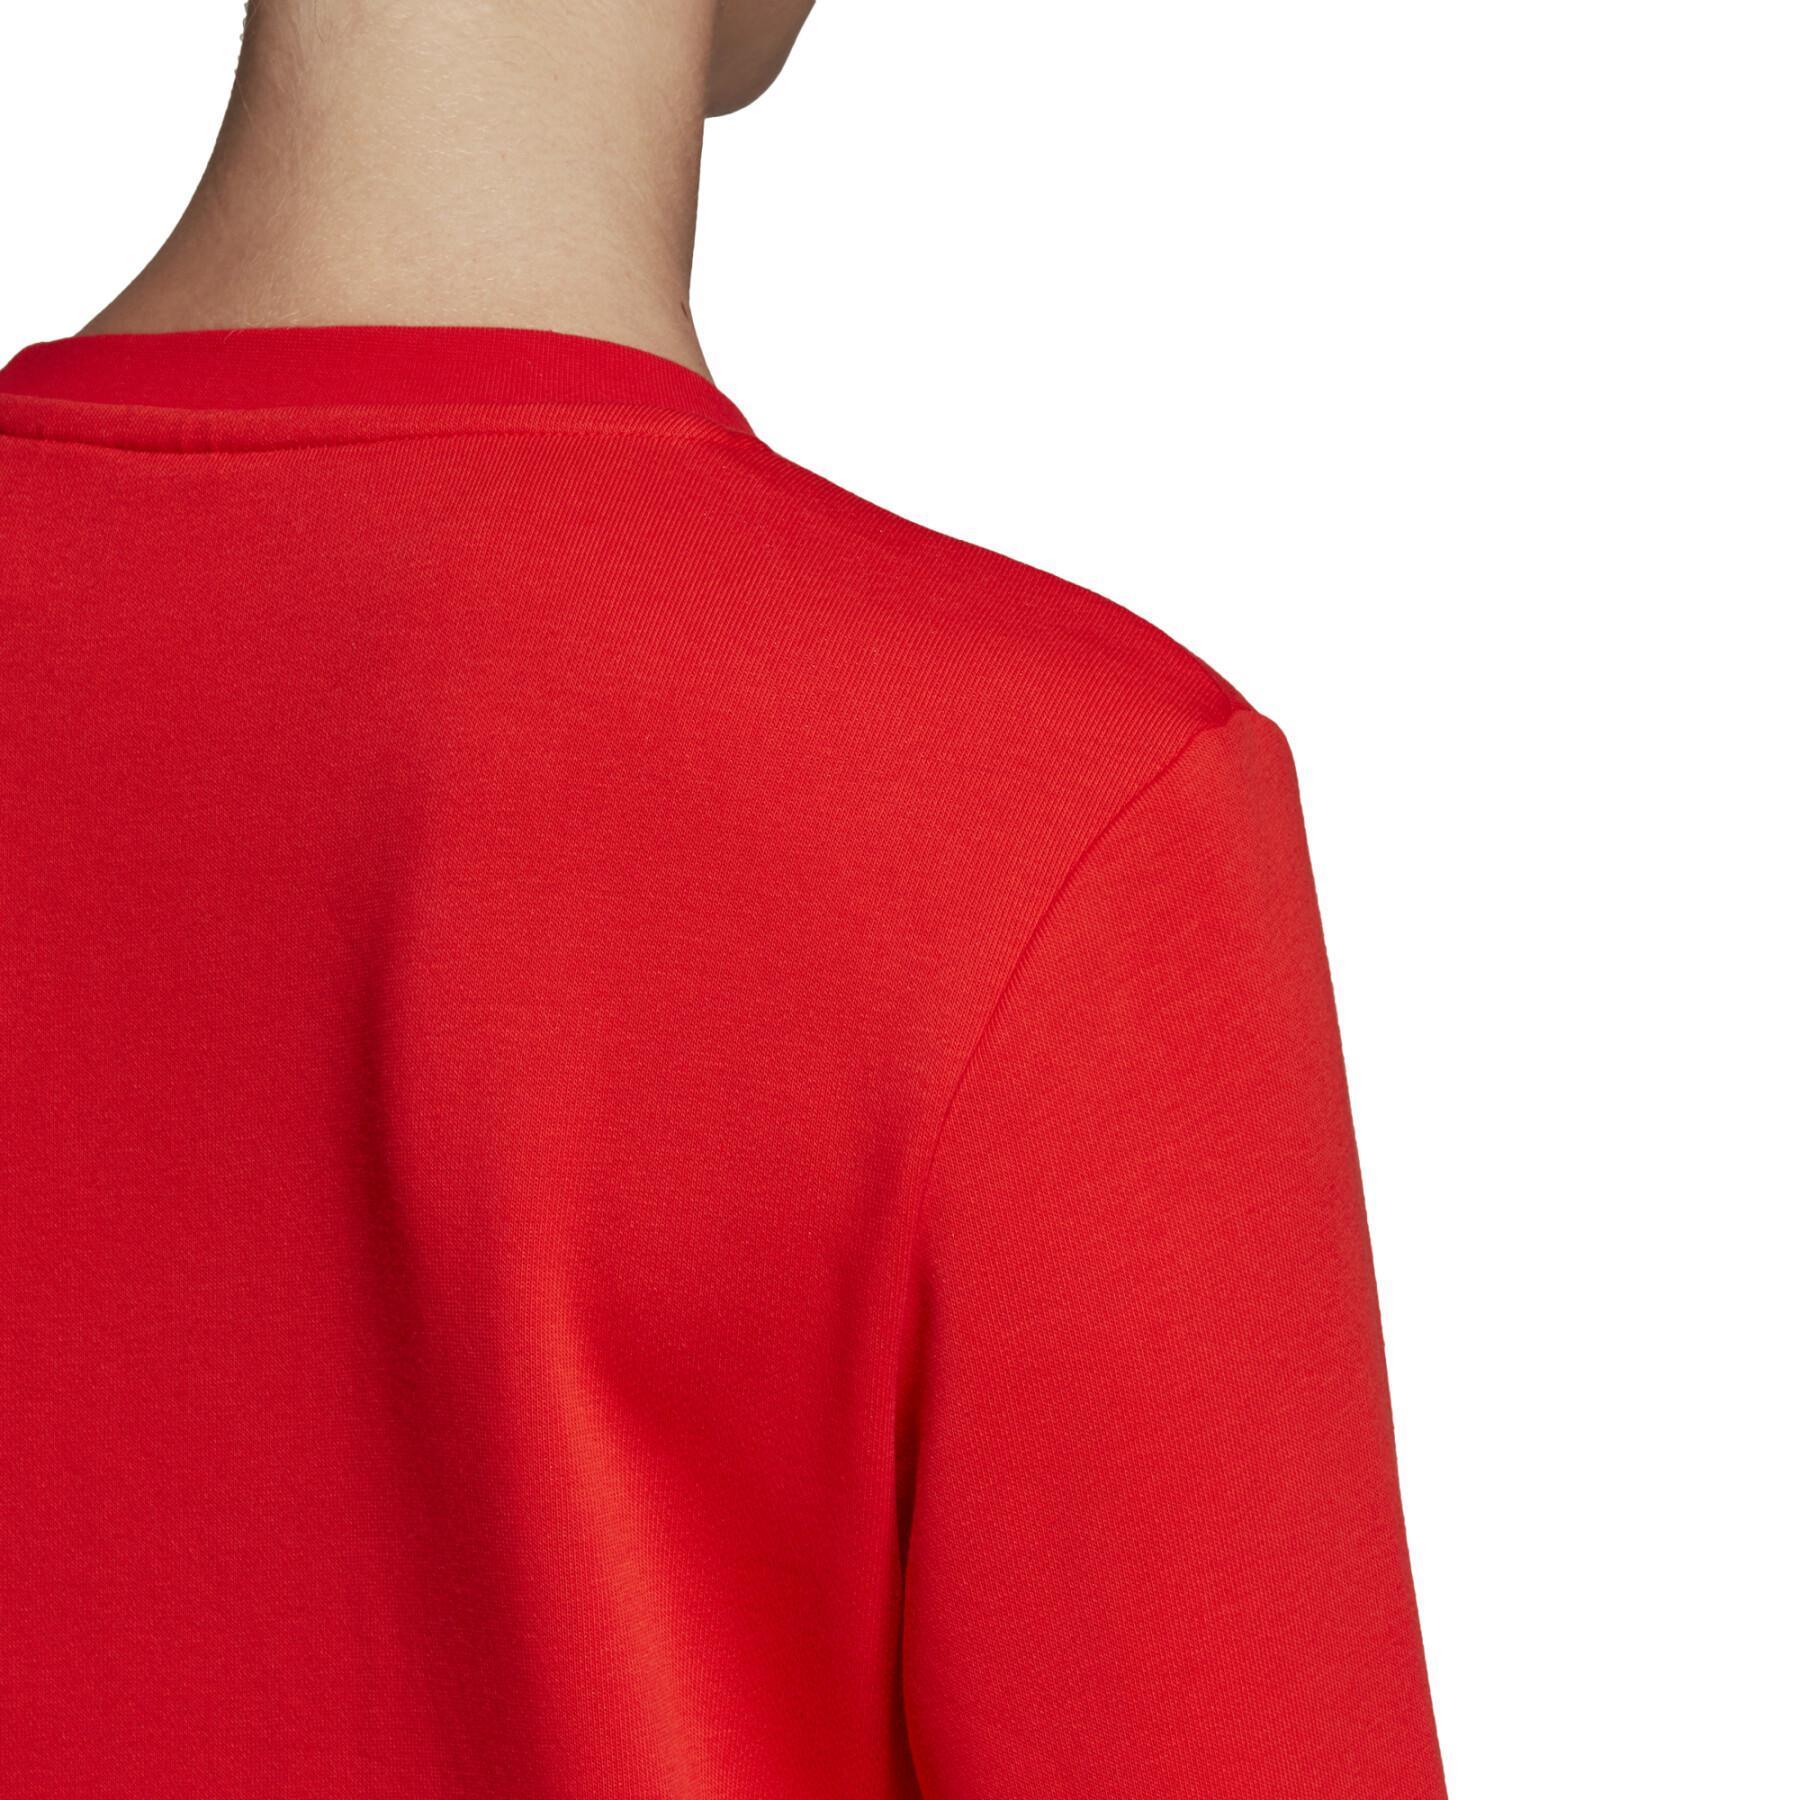 Sweatshirt femme adidas Essentials Linear